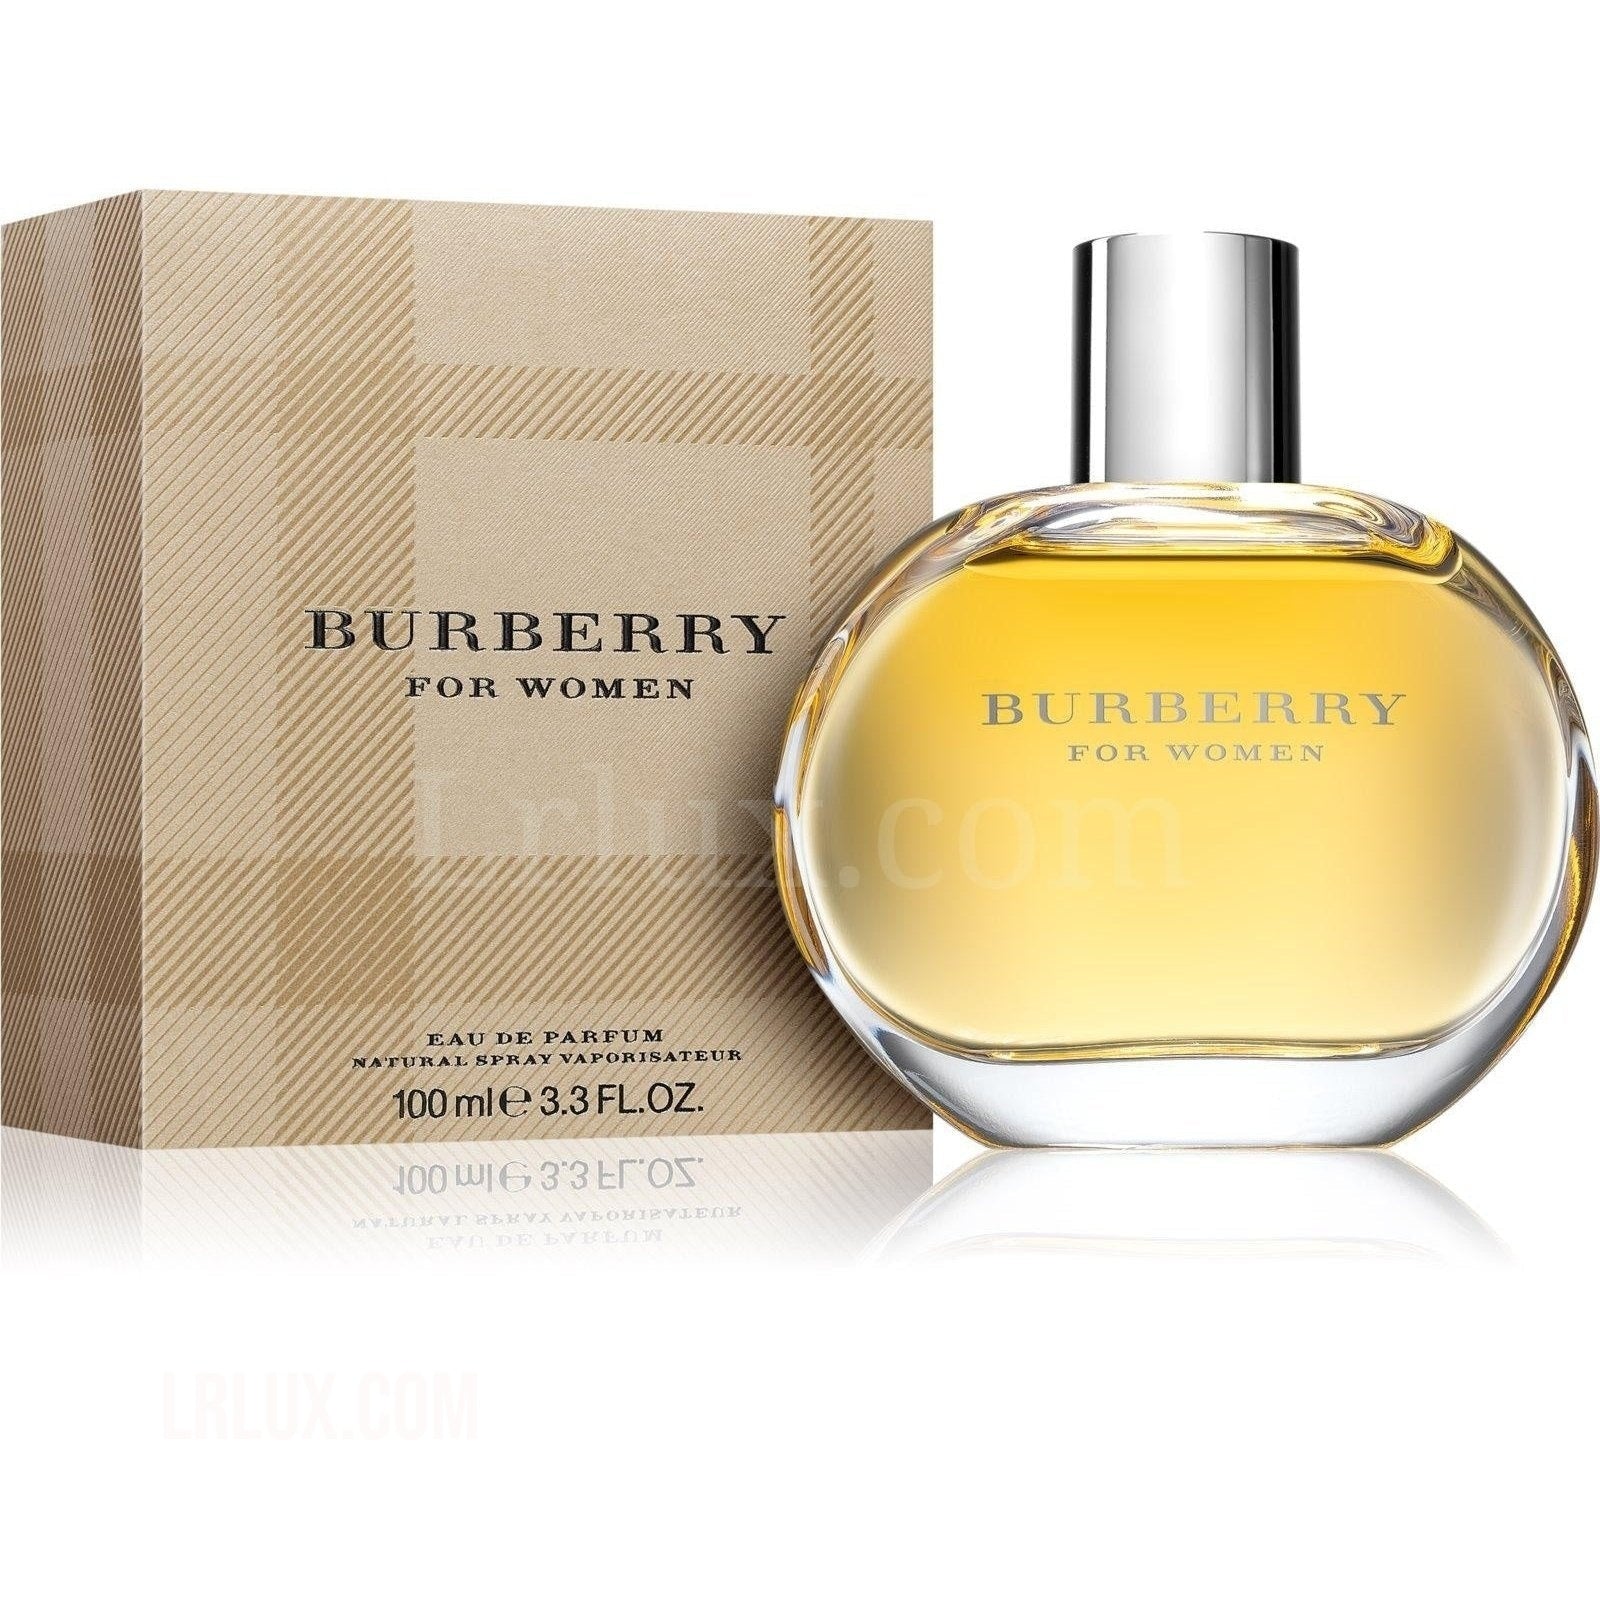 Burberry for Women 3.4 oz - Lrlux.com